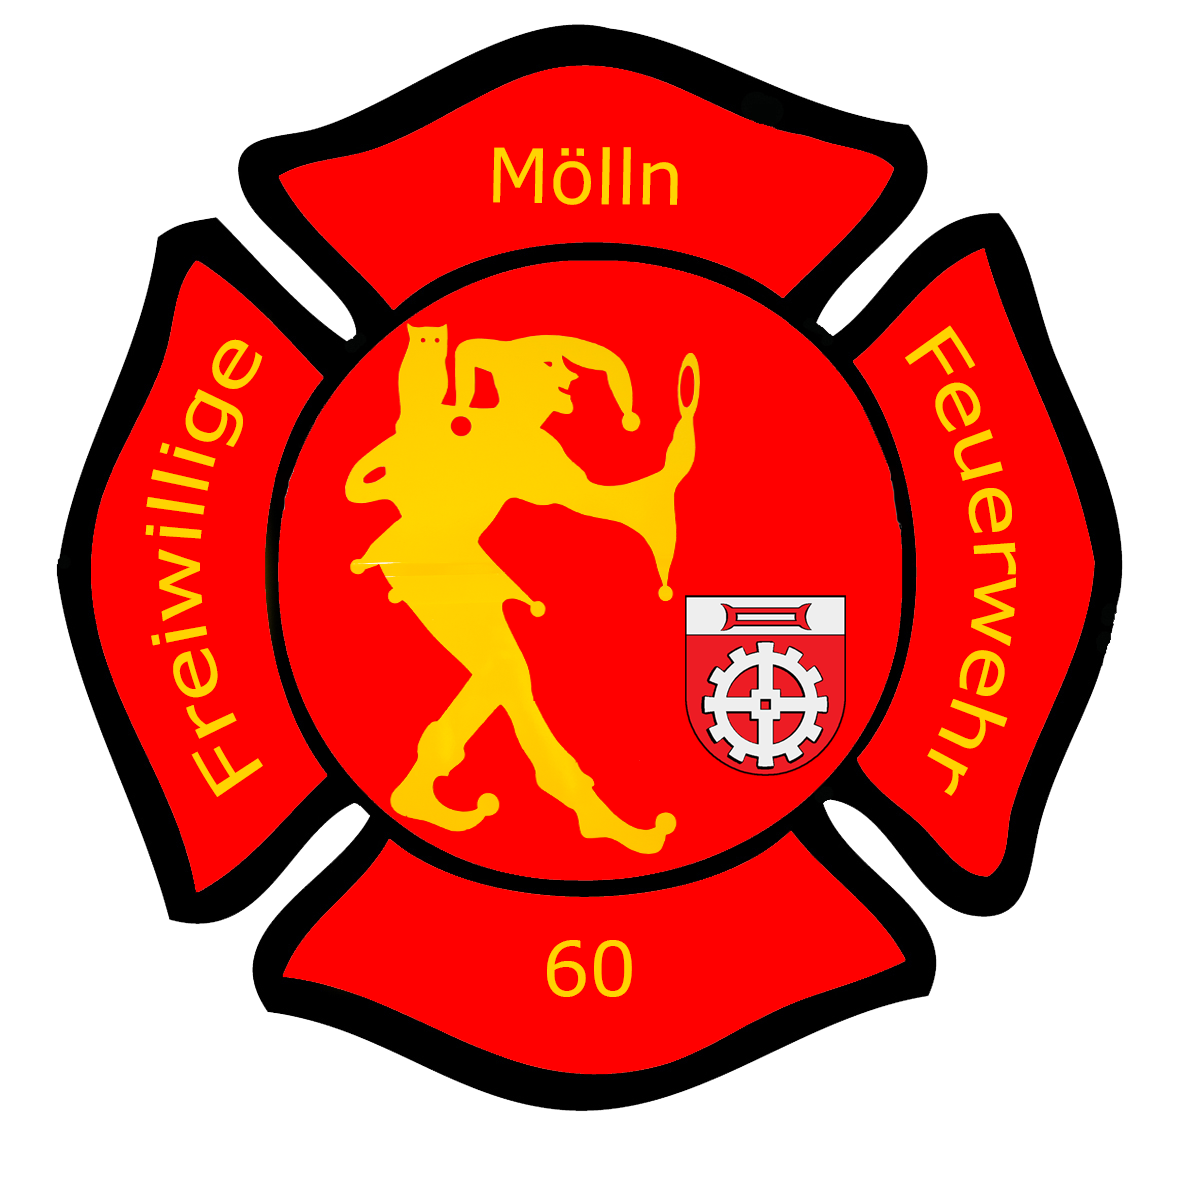 Freiwillige Feuerwehr Mölln in Schleswig-Holstein. Für Notruf immer 110/112 wählen.